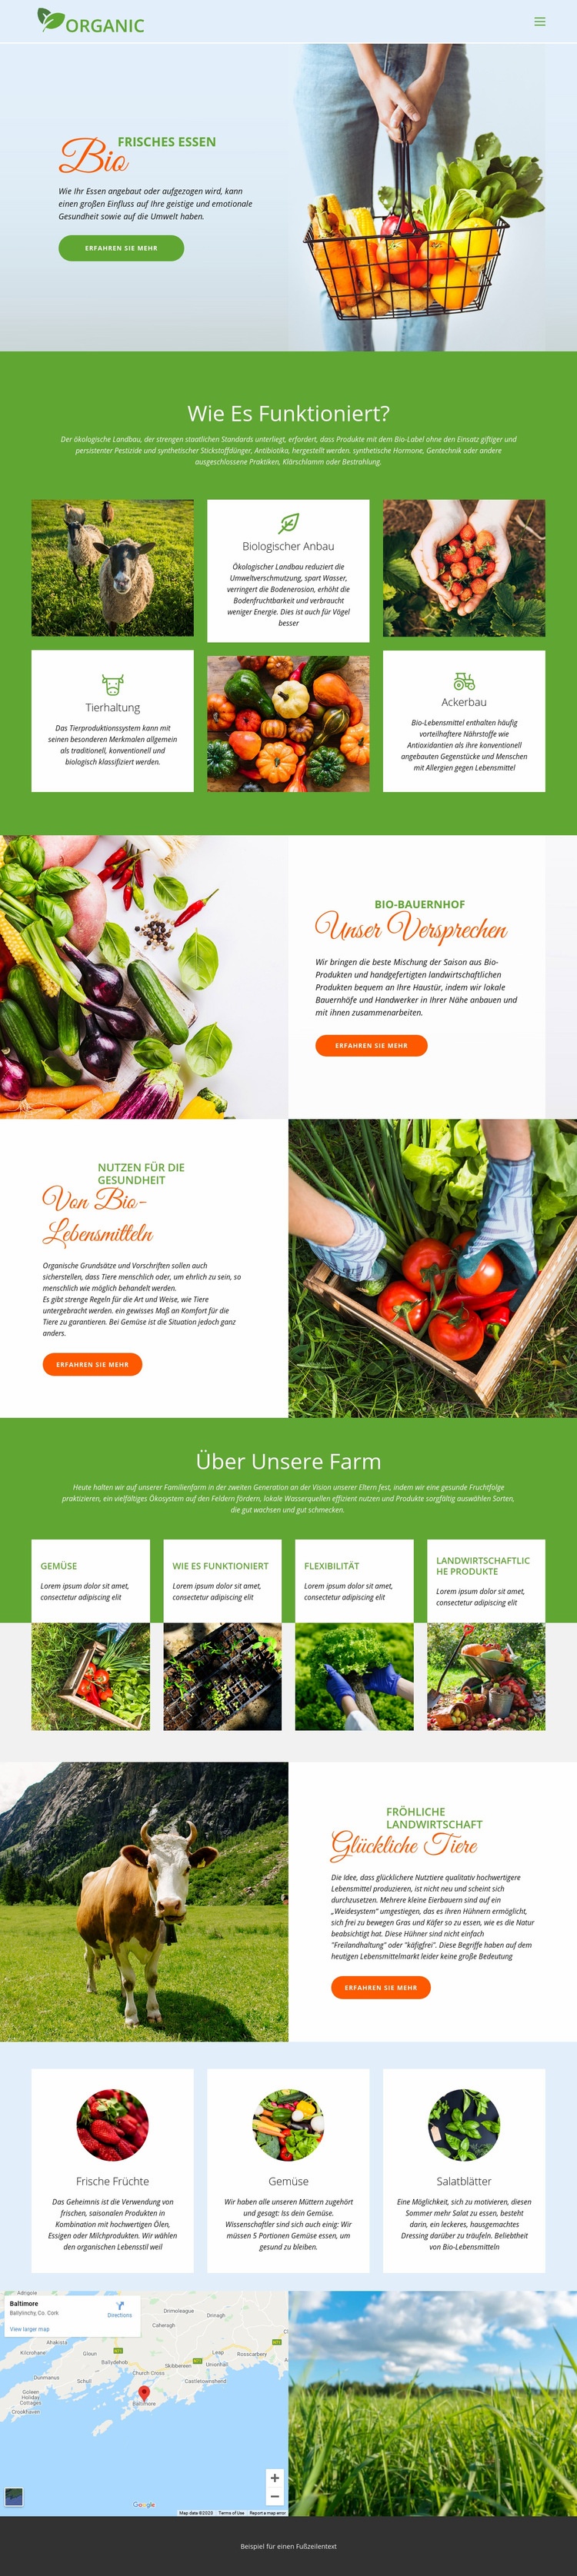 Essen Sie am besten Bio-Lebensmittel Website design